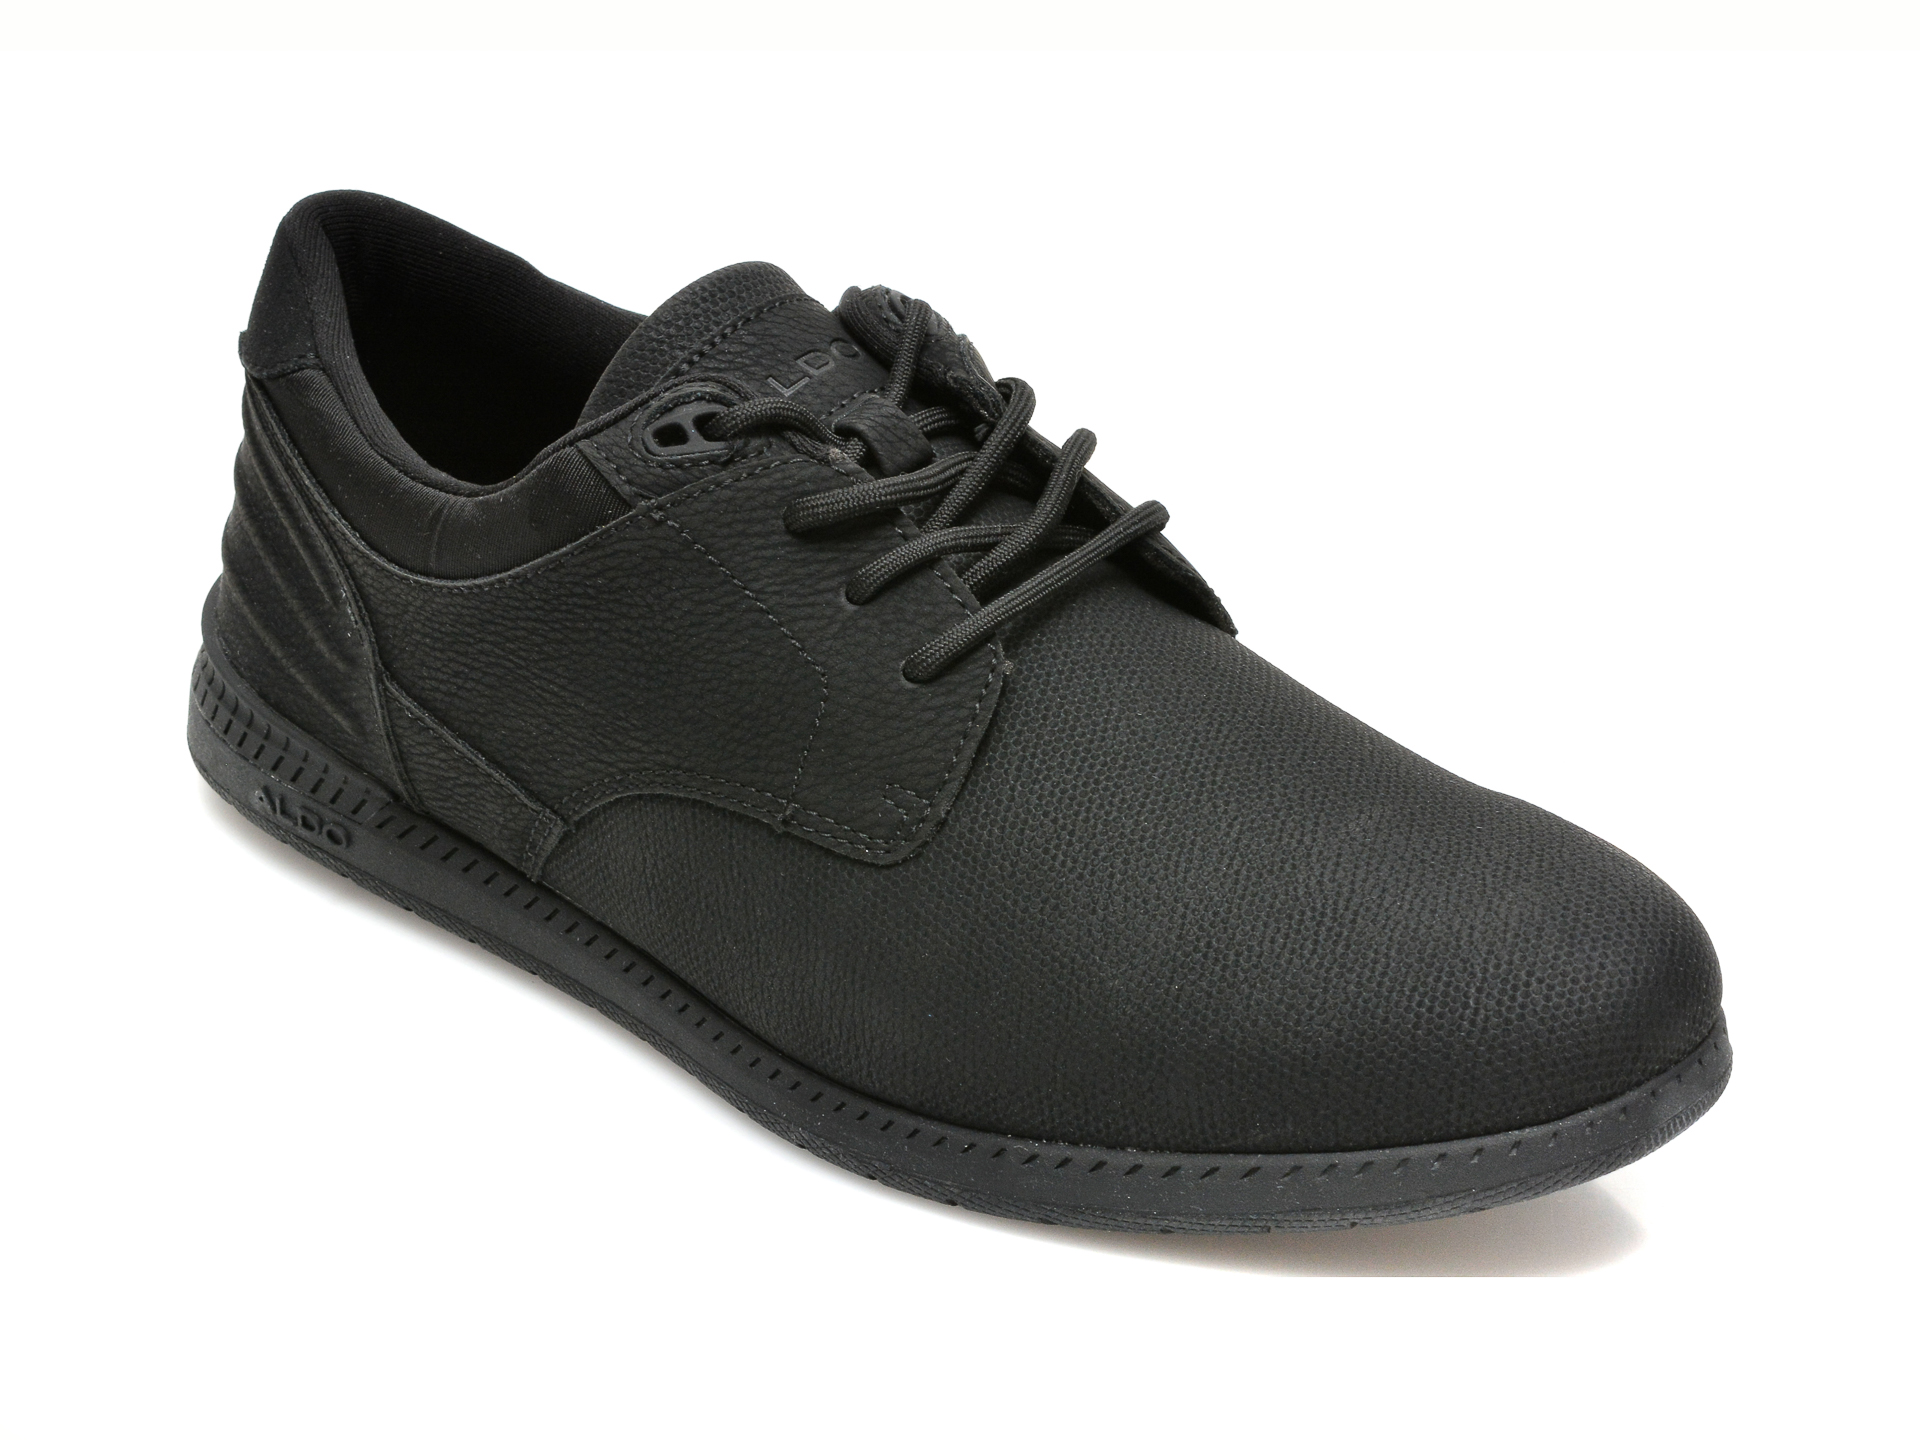 Pantofi ALDO negri, DINBREN001, din piele ecologica Aldo imagine reduceri